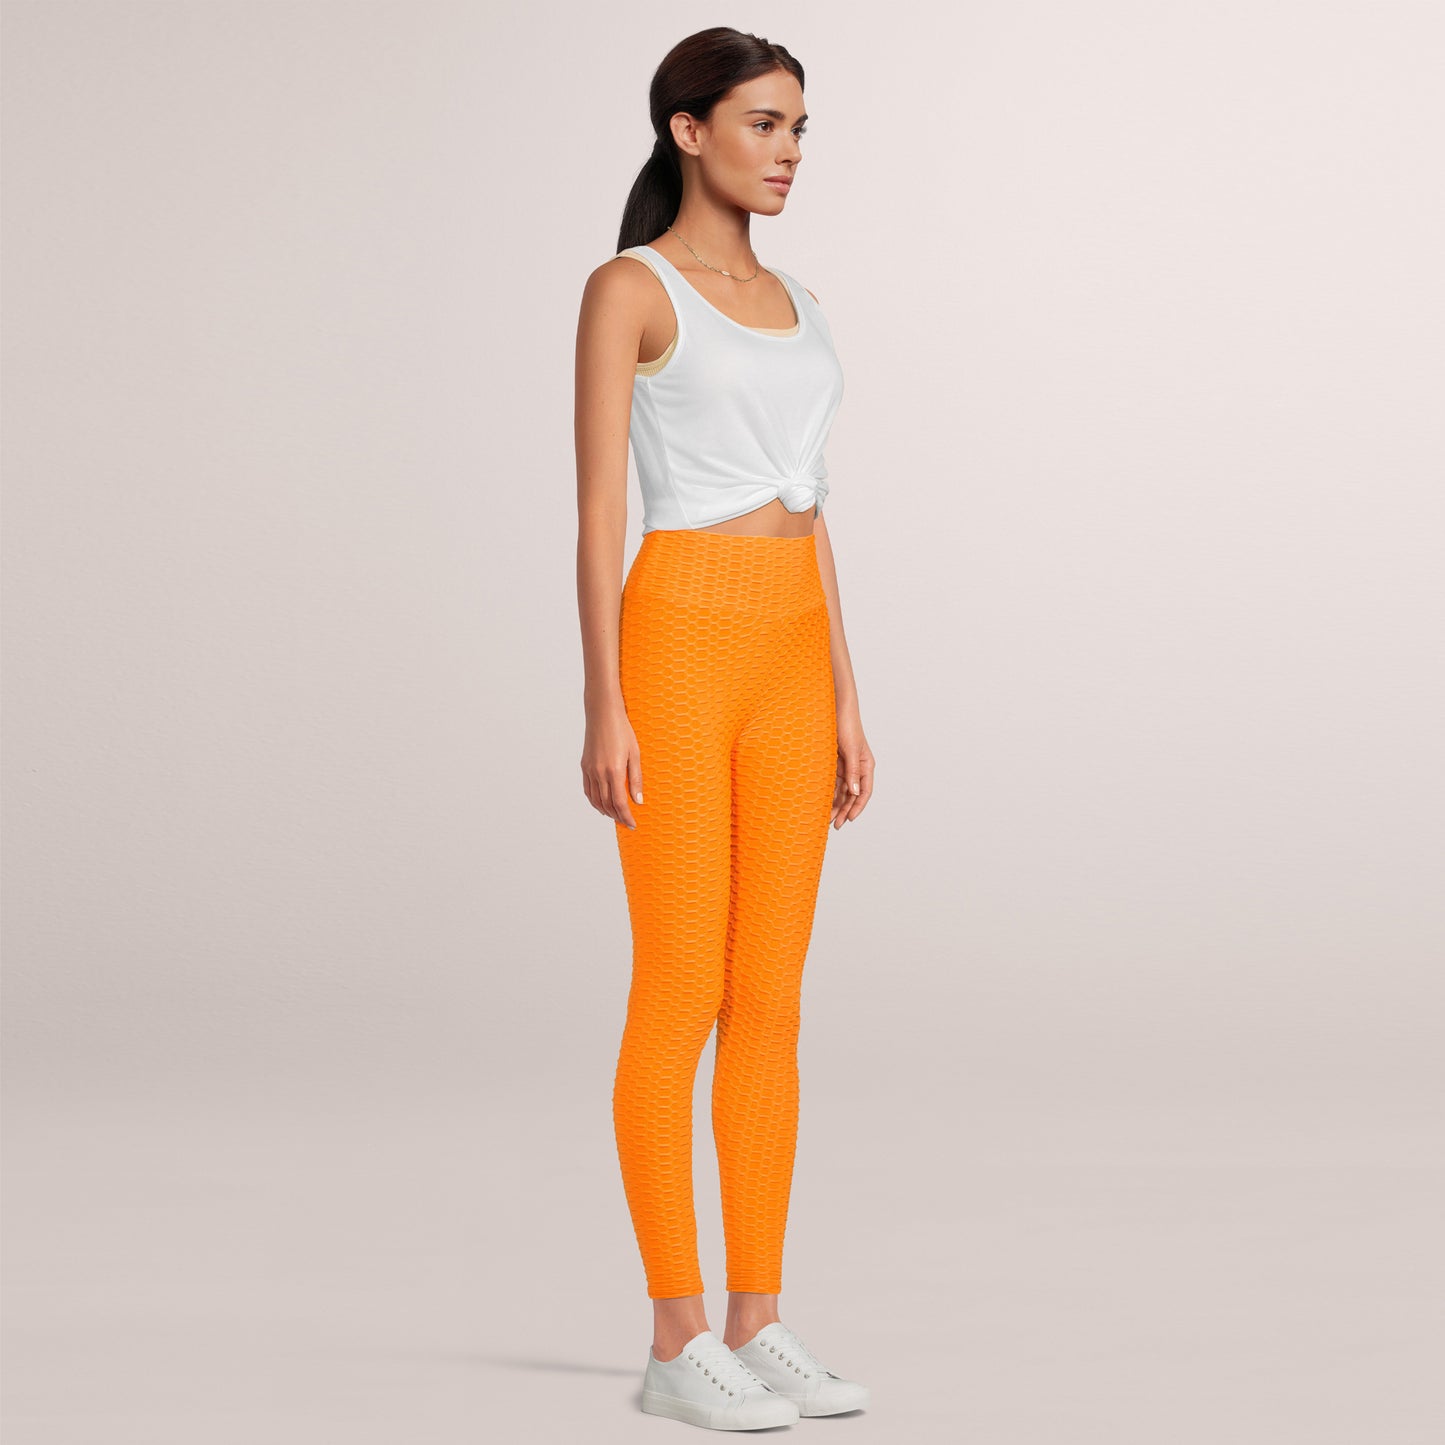 SOBEYO Womens'  Legging Bubble Stretchable Orange